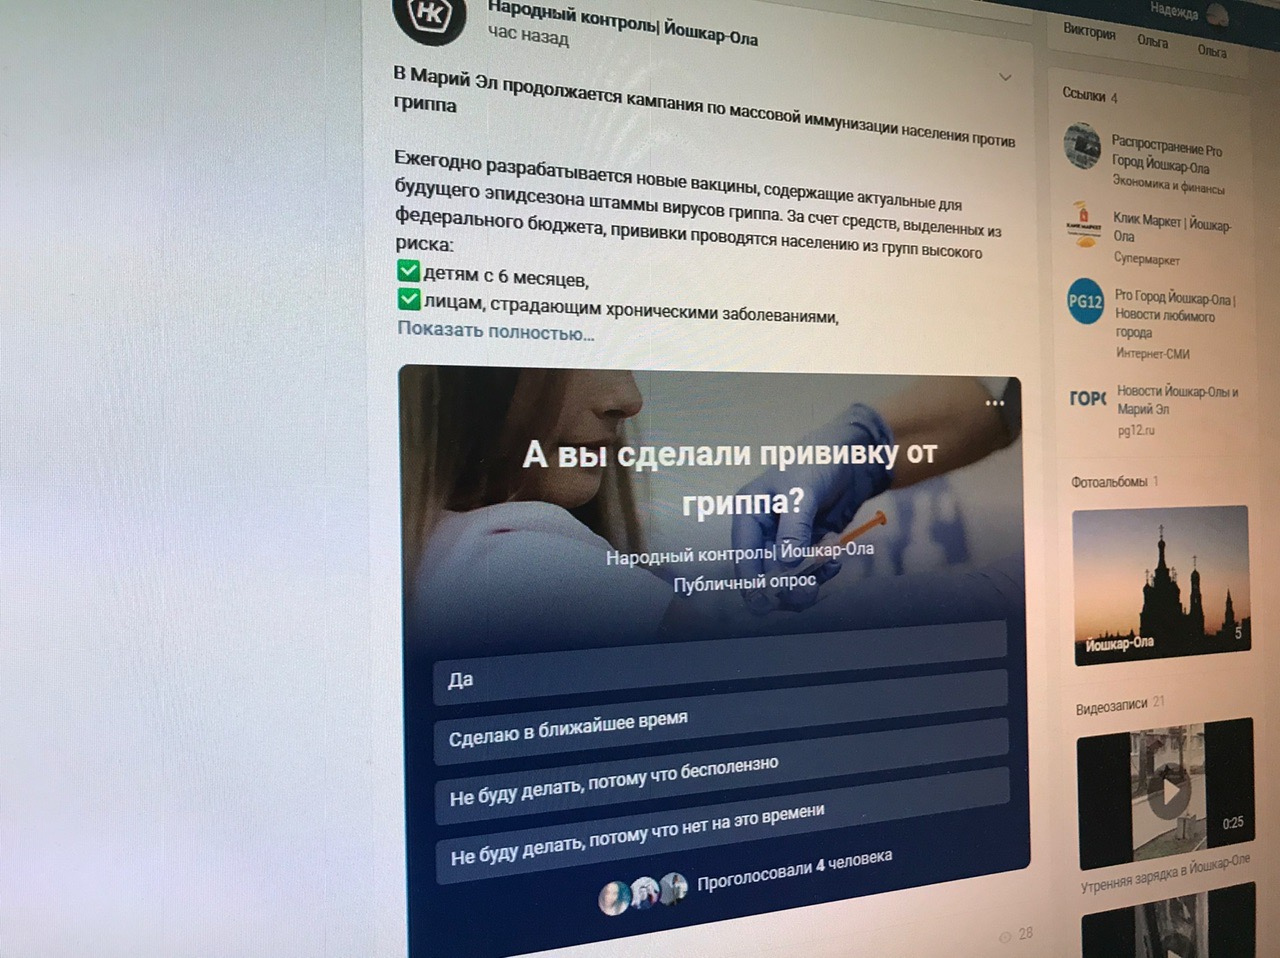 Жители Марий Эл смогут ставить дизлайки во ВКонтакте